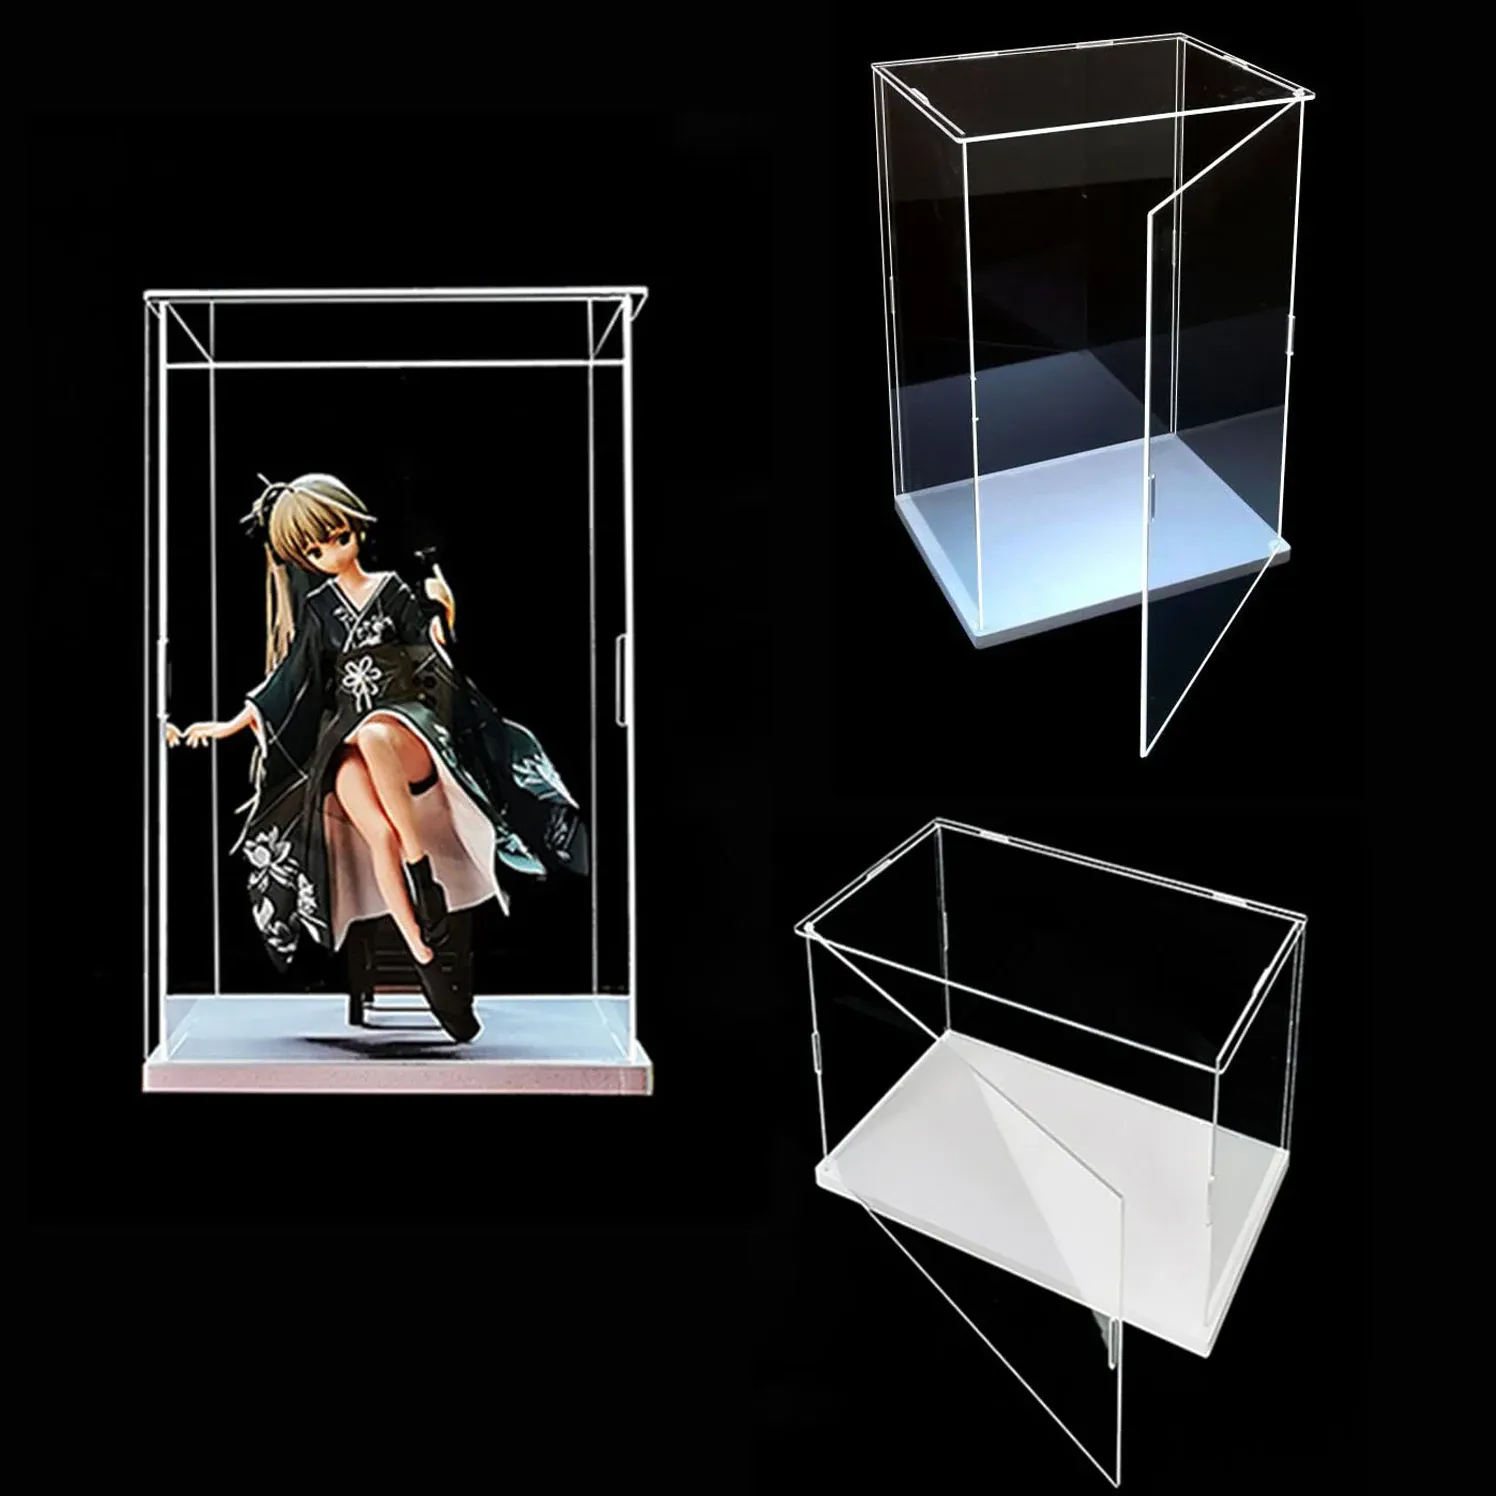 Bins Acrylclear -Display -Hülle Öffnungsbezogene weiße Basis, klare staubsichere Schutzkasten, Display -Box -Lagerhalter für Spielzeugsammlungen